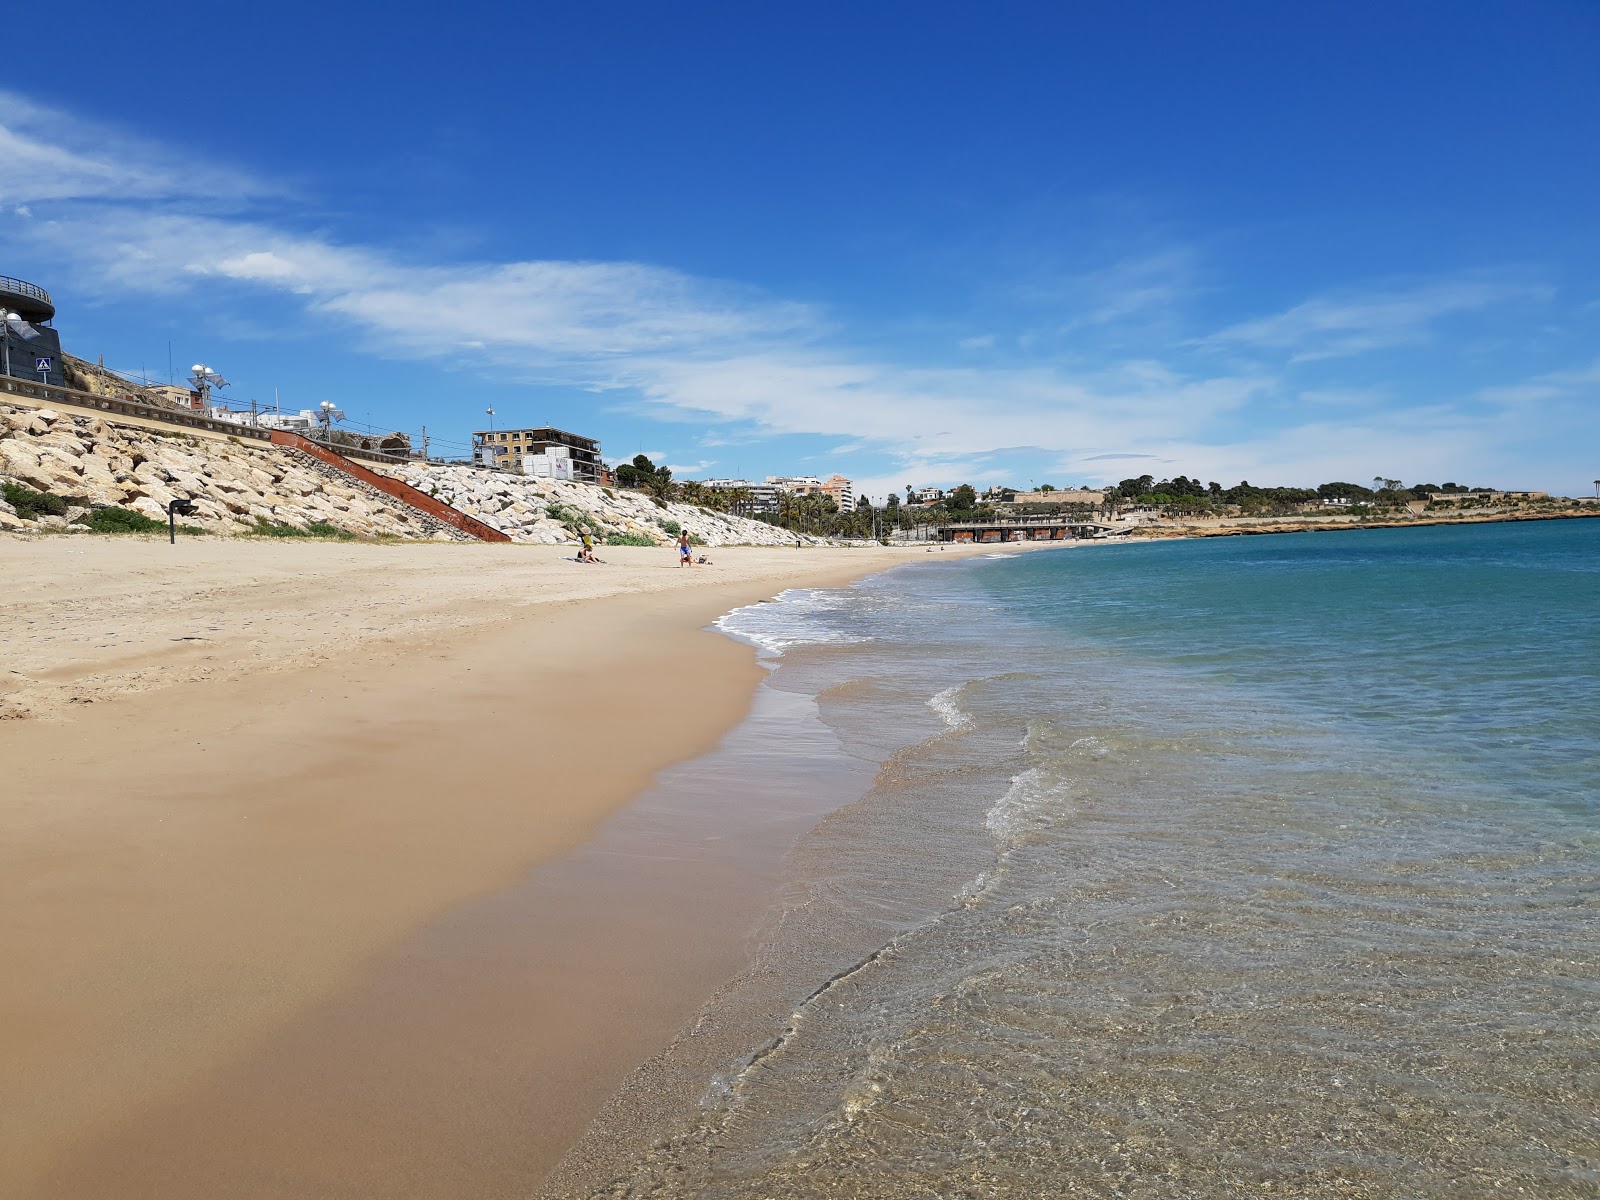 Fotografie cu Platja del Miracle cu o suprafață de nisip maro